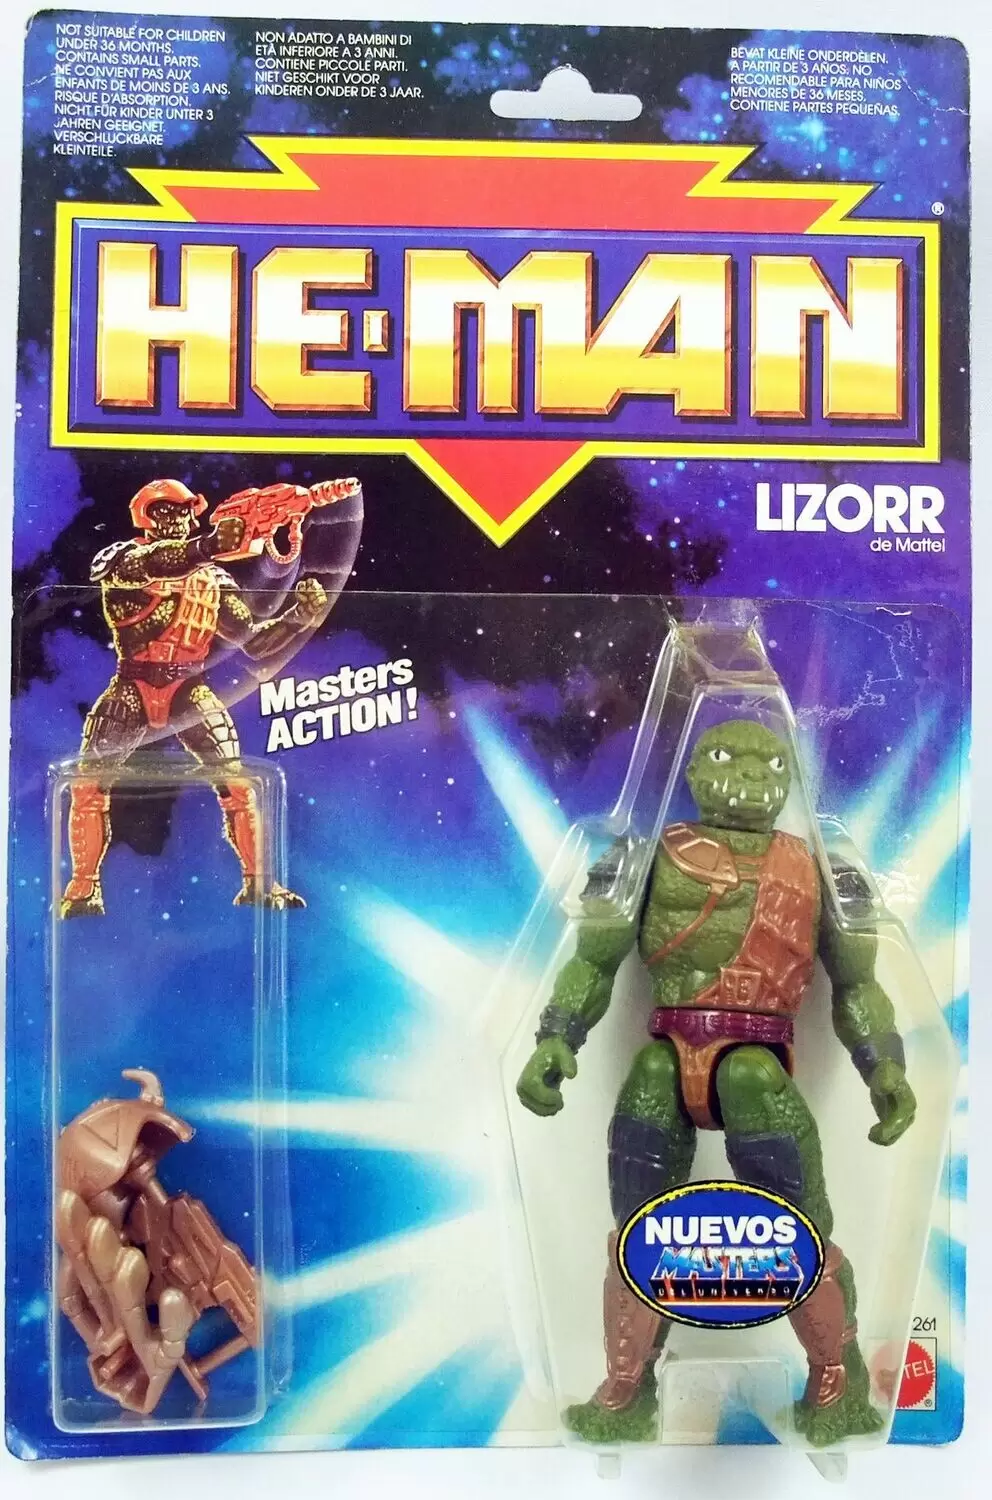 He-Man, le héros du futur - Les ailes immortelles - Lizorr